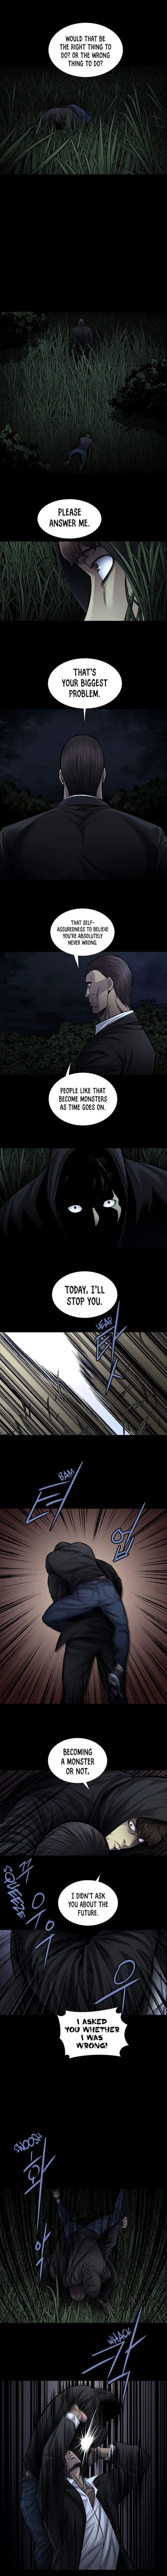 Vigilante - Chapter 77 Page 4